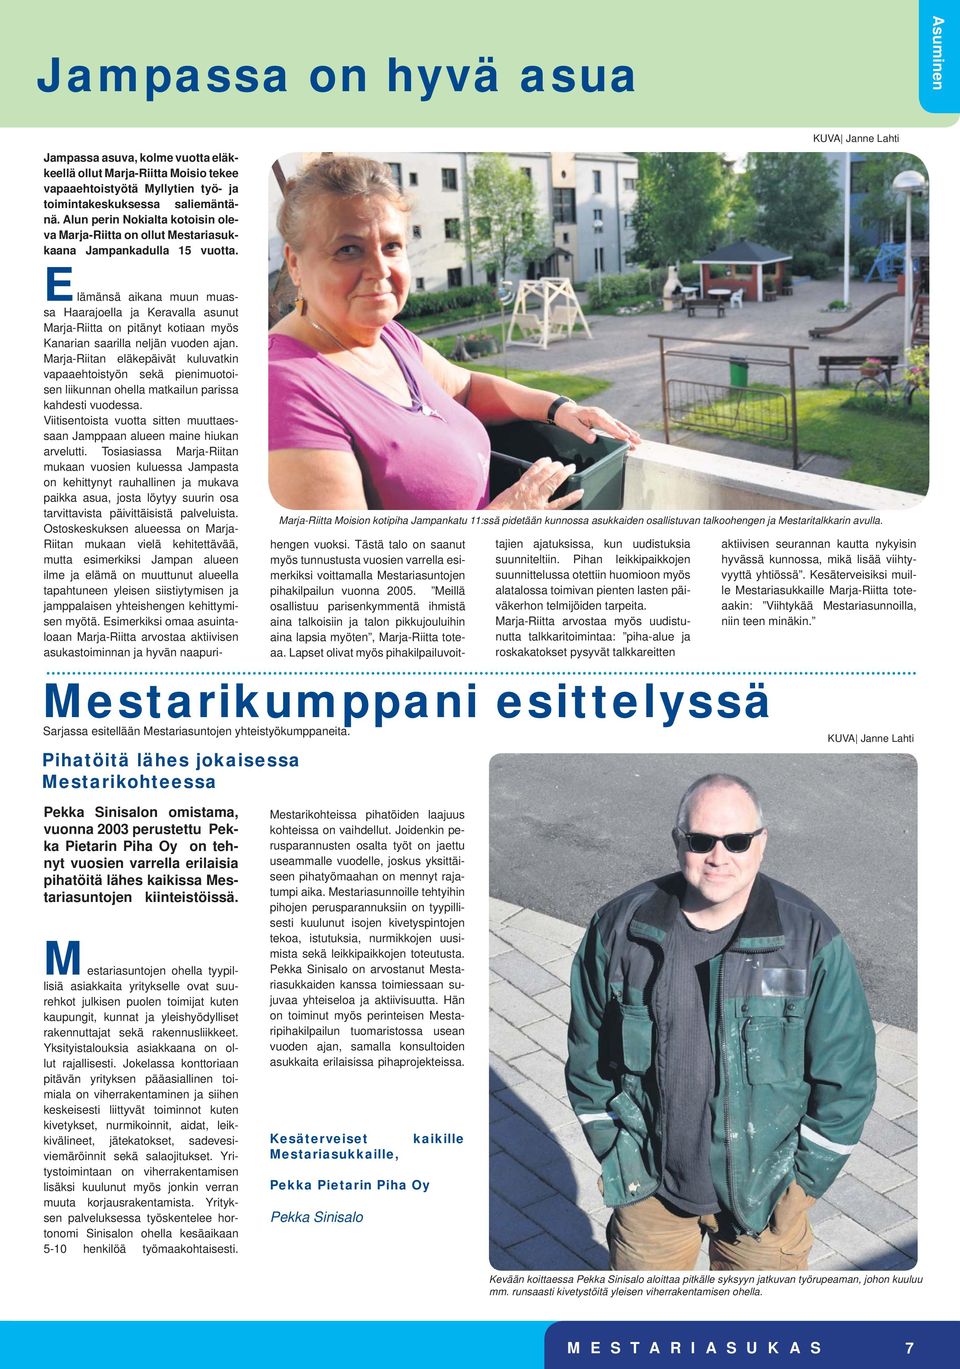 KUVA Janne Lahti Marja-Riitta Moision kotipiha Jampankatu 11:ssä pidetään kunnossa asukkaiden osallistuvan talkoohengen ja Mestaritalkkarin avulla.